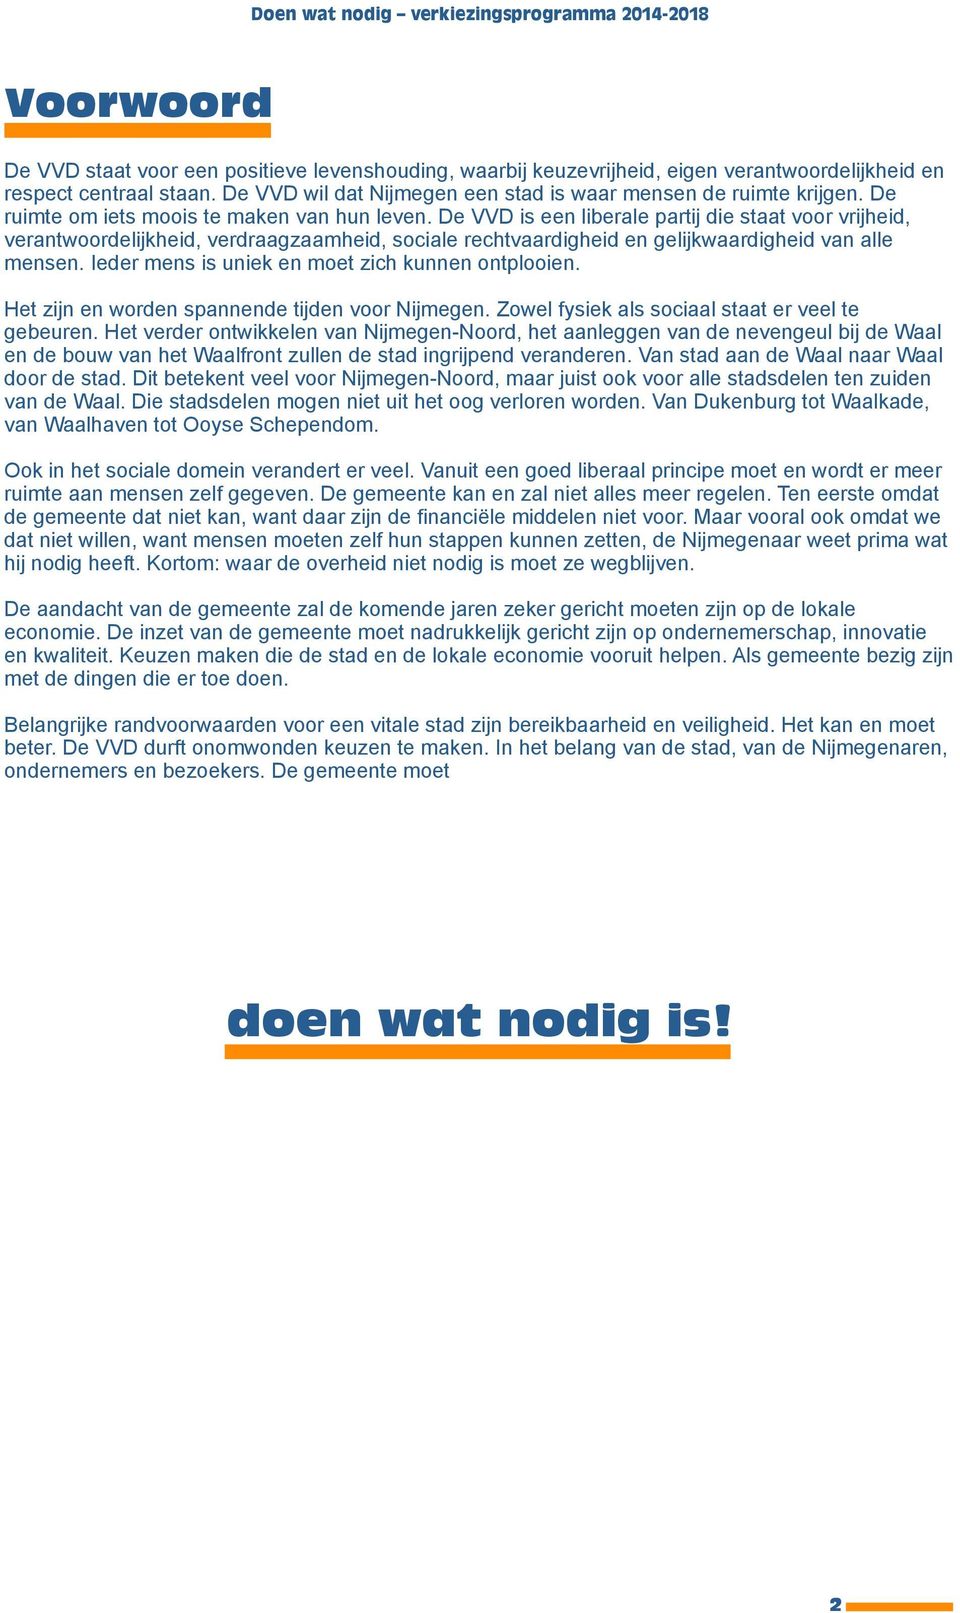 De VVD is een liberale partij die staat voor vrijheid, verantwoordelijkheid, verdraagzaamheid, sociale rechtvaardigheid en gelijkwaardigheid van alle mensen.